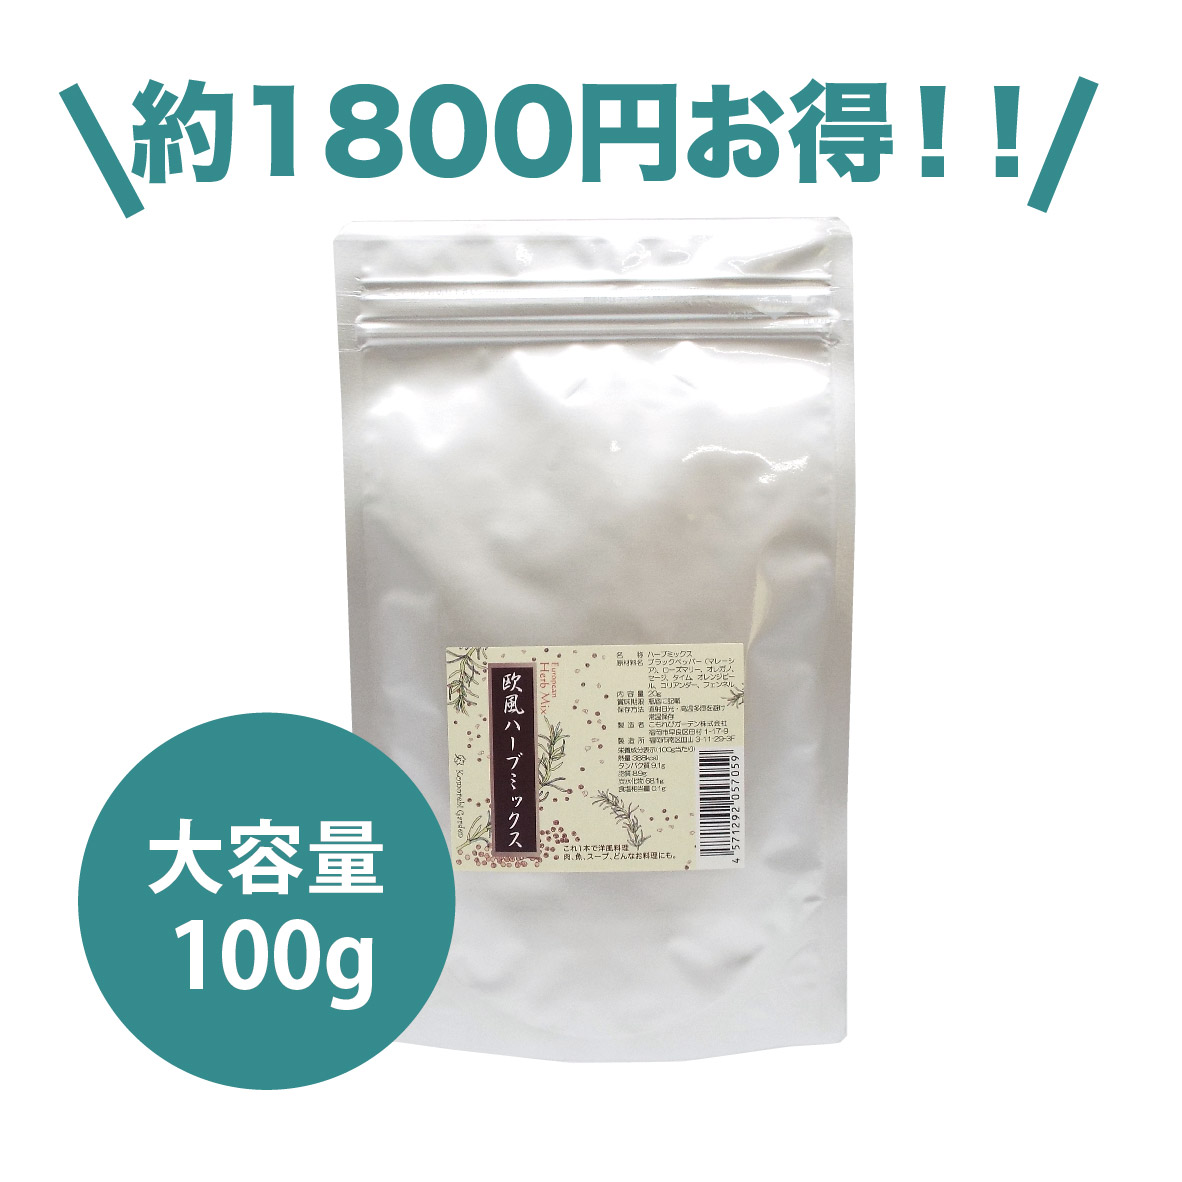 【お得なサイズ】ハーブソルト塩無しバージョン 欧風ハーブミックス(無塩) 100g